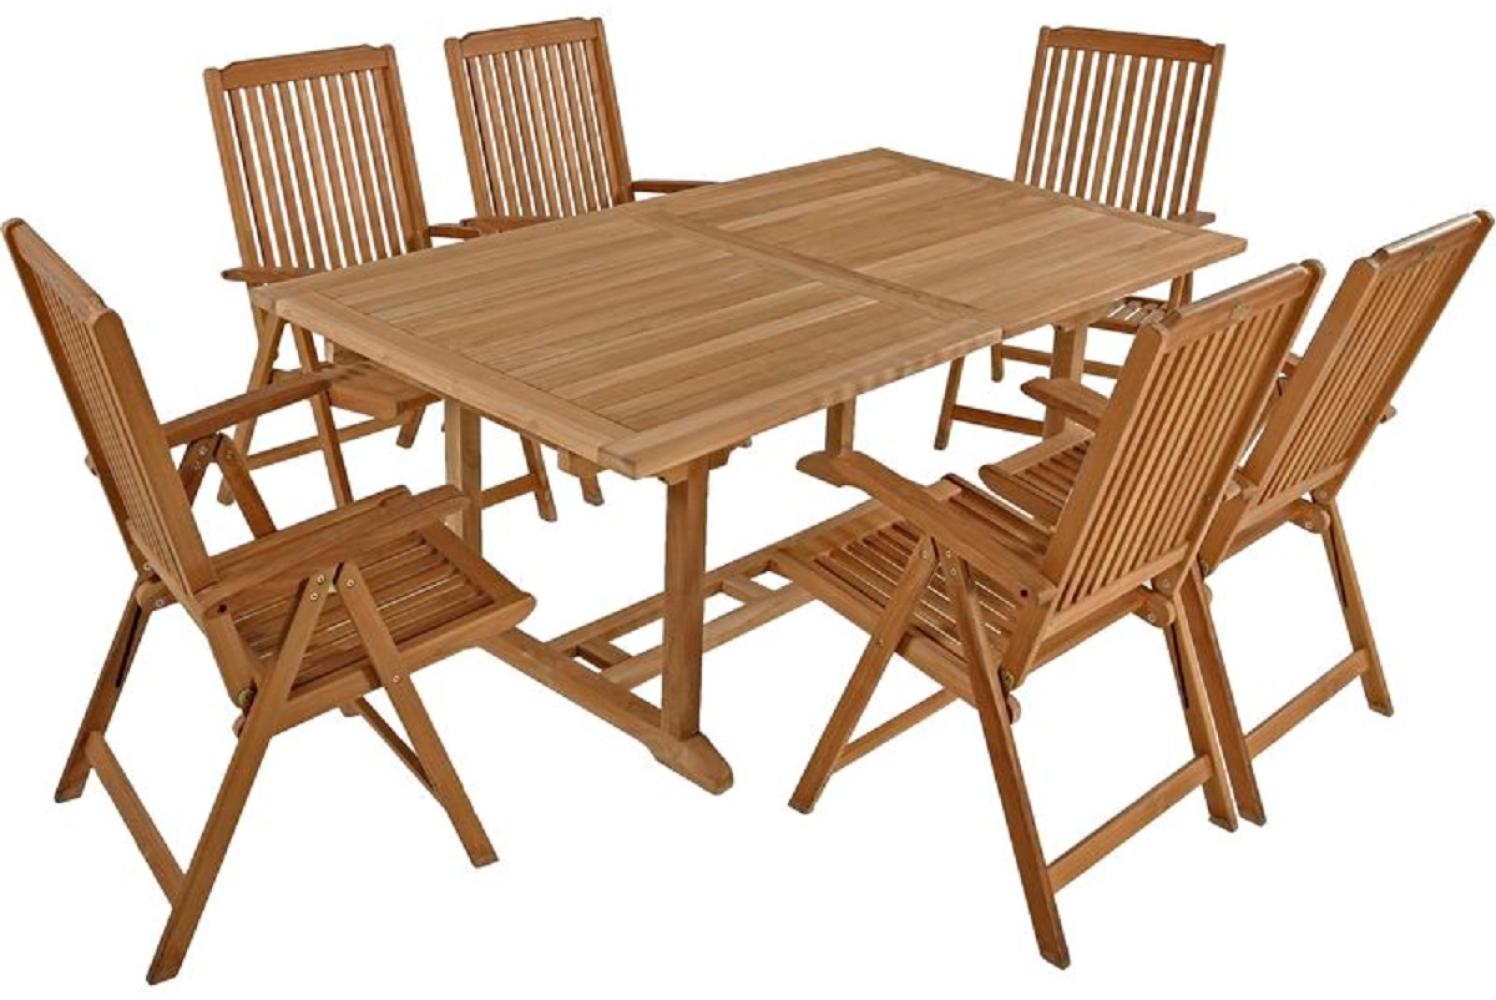 7tlg. Teak Tischgruppe Gartenmöbel Gartentisch Stuhl Garten Hochlehner Tisch Bild 1